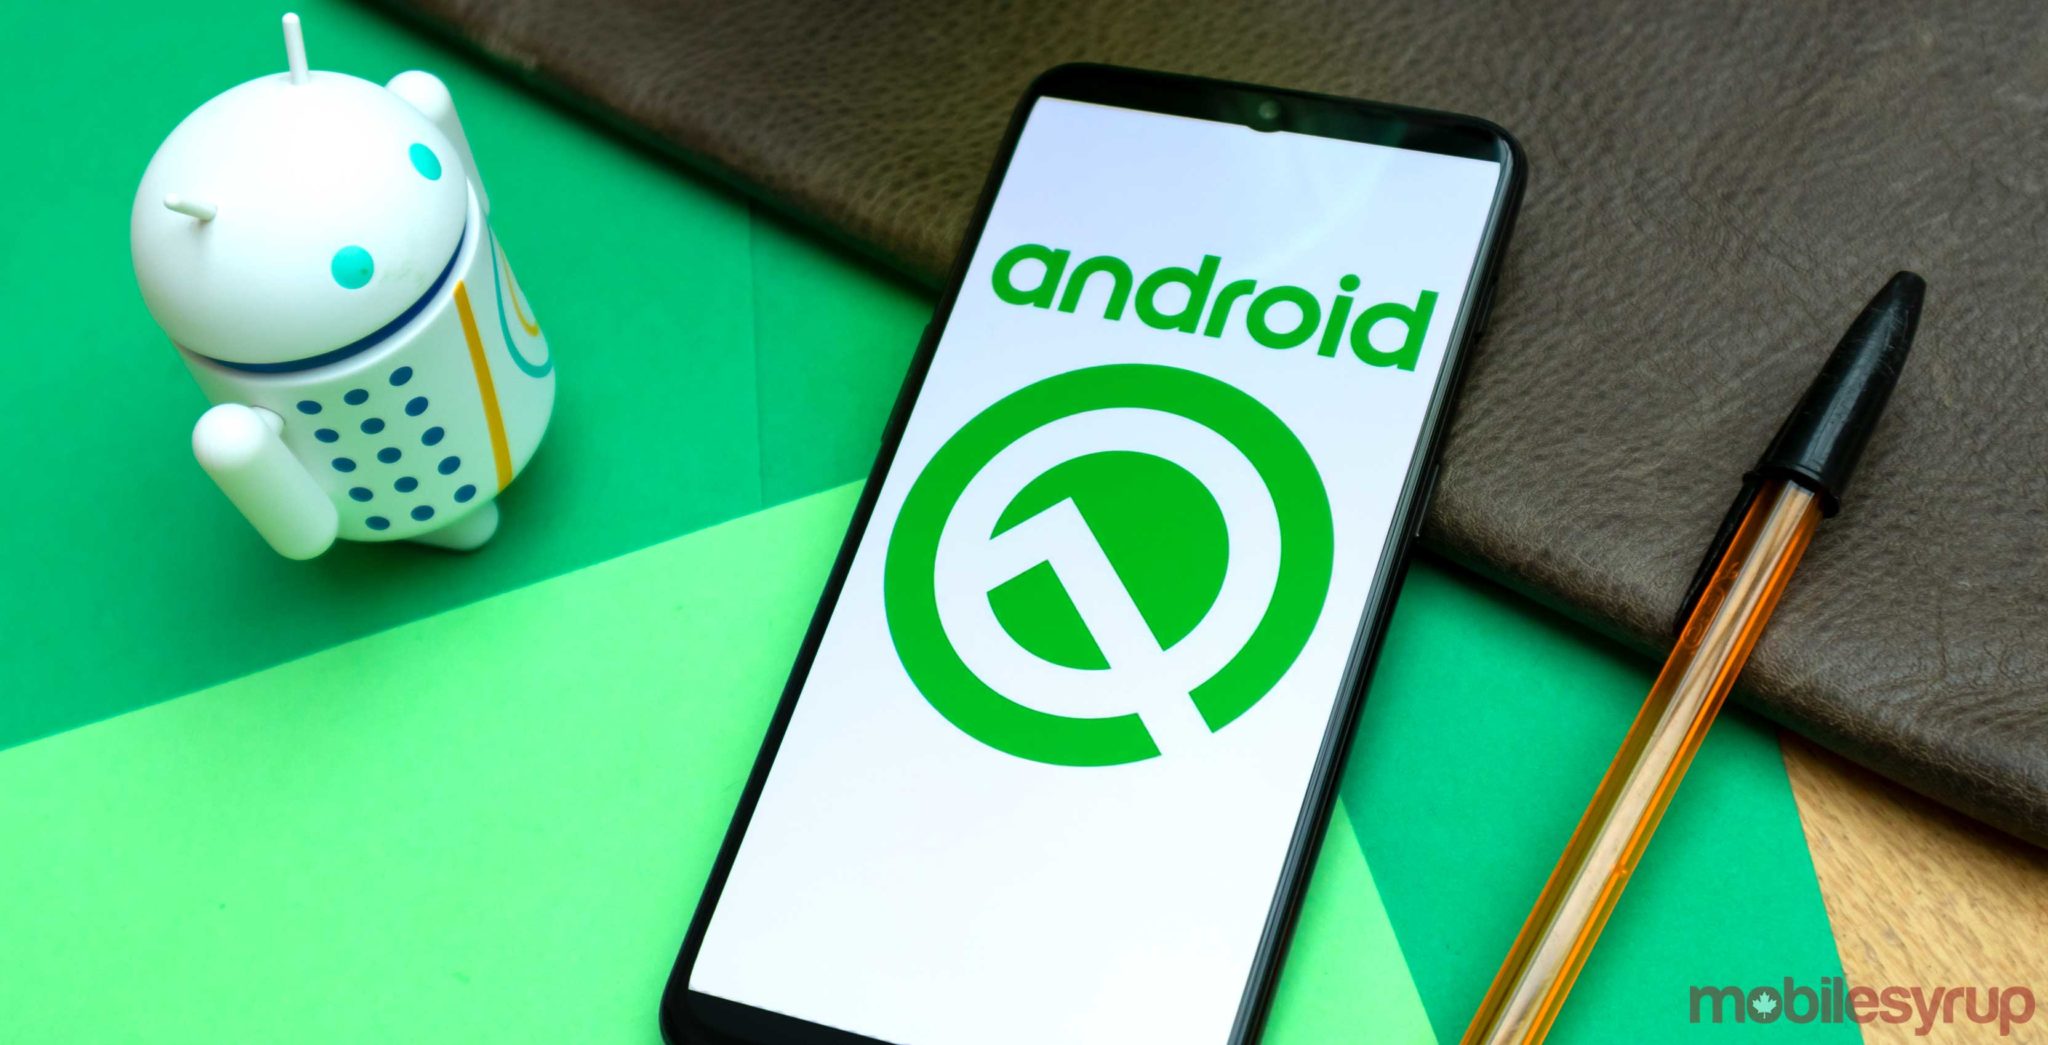 Gli smartphone ricevono l'aggiornamento Android Q